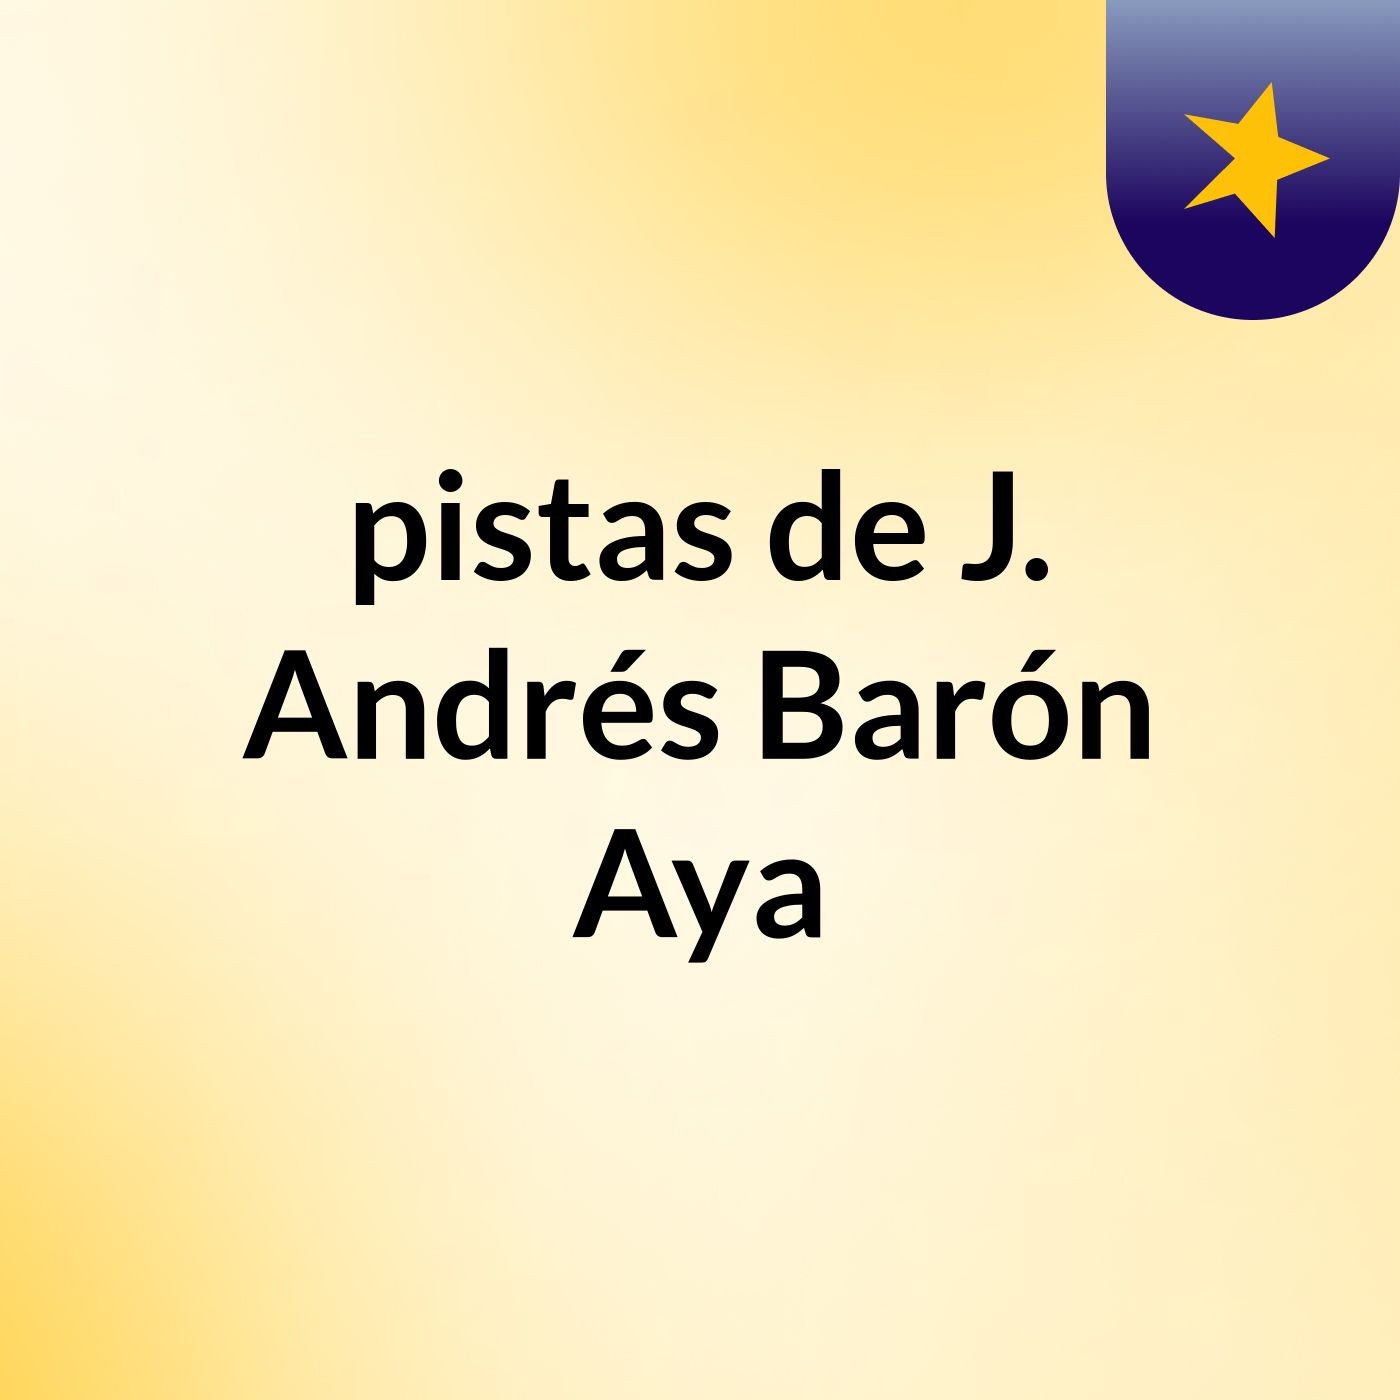 pistas de J. Andrés Barón Aya